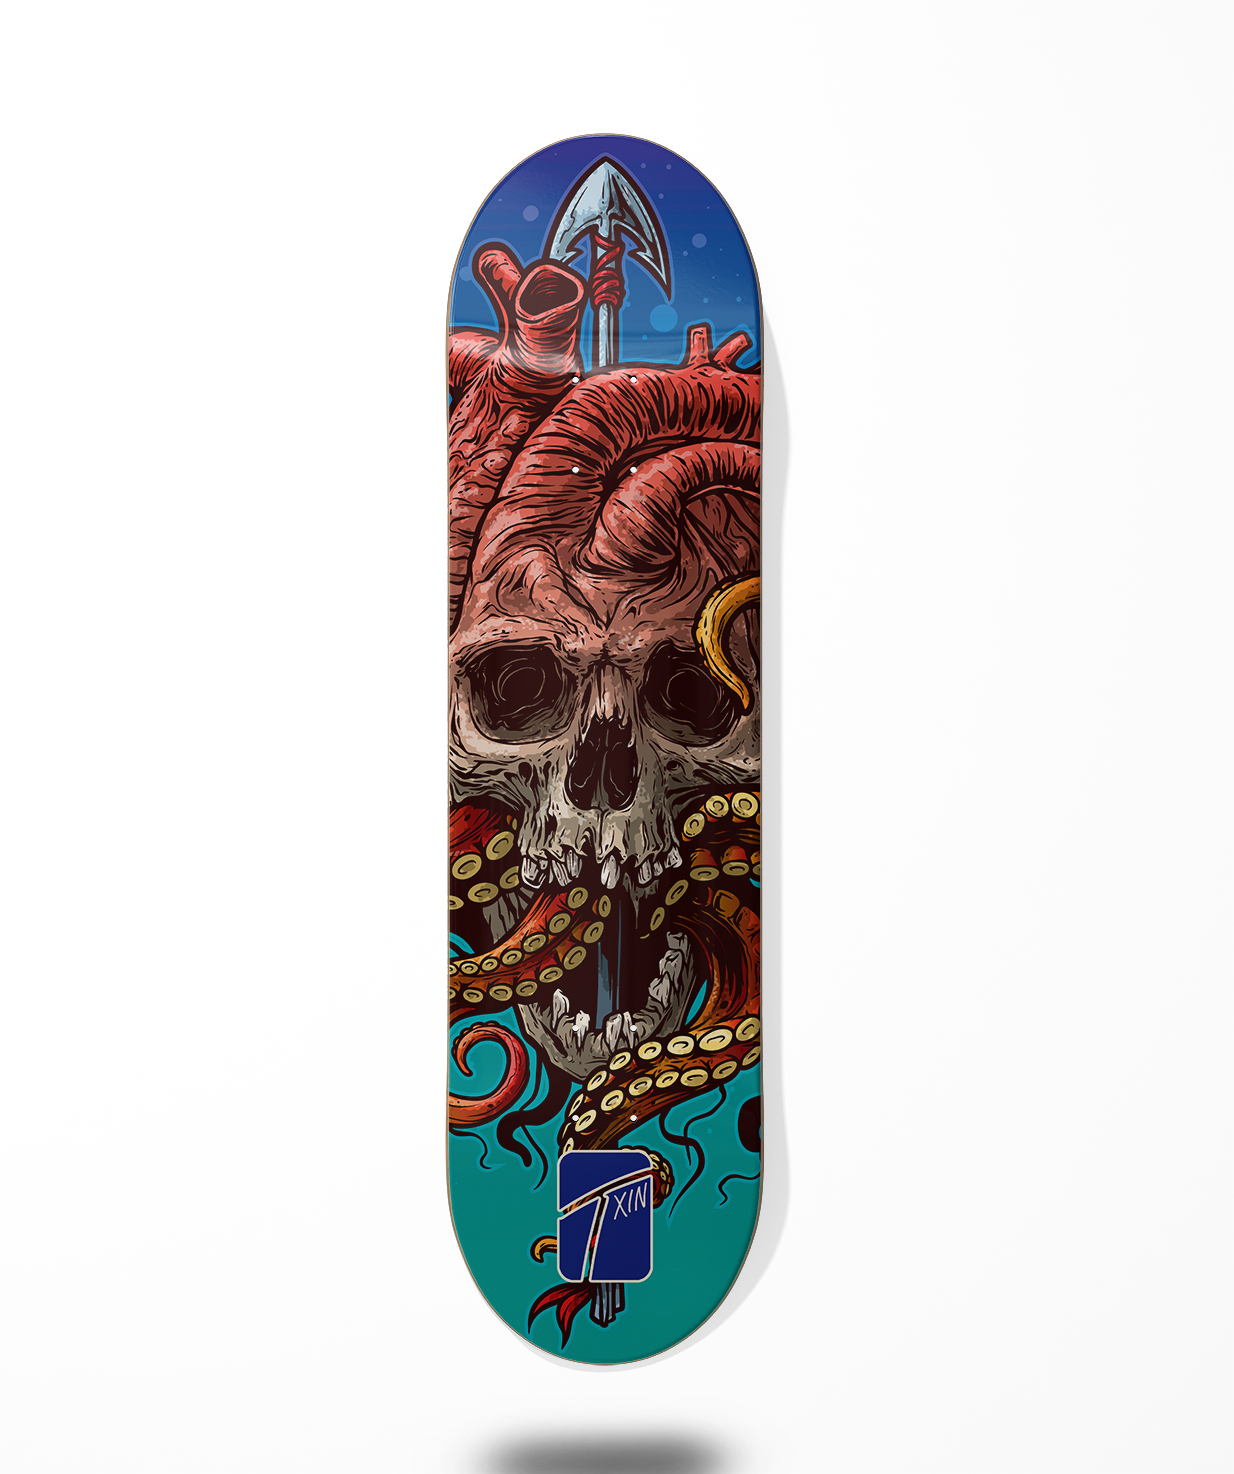 Txin skateboard deck - Grison